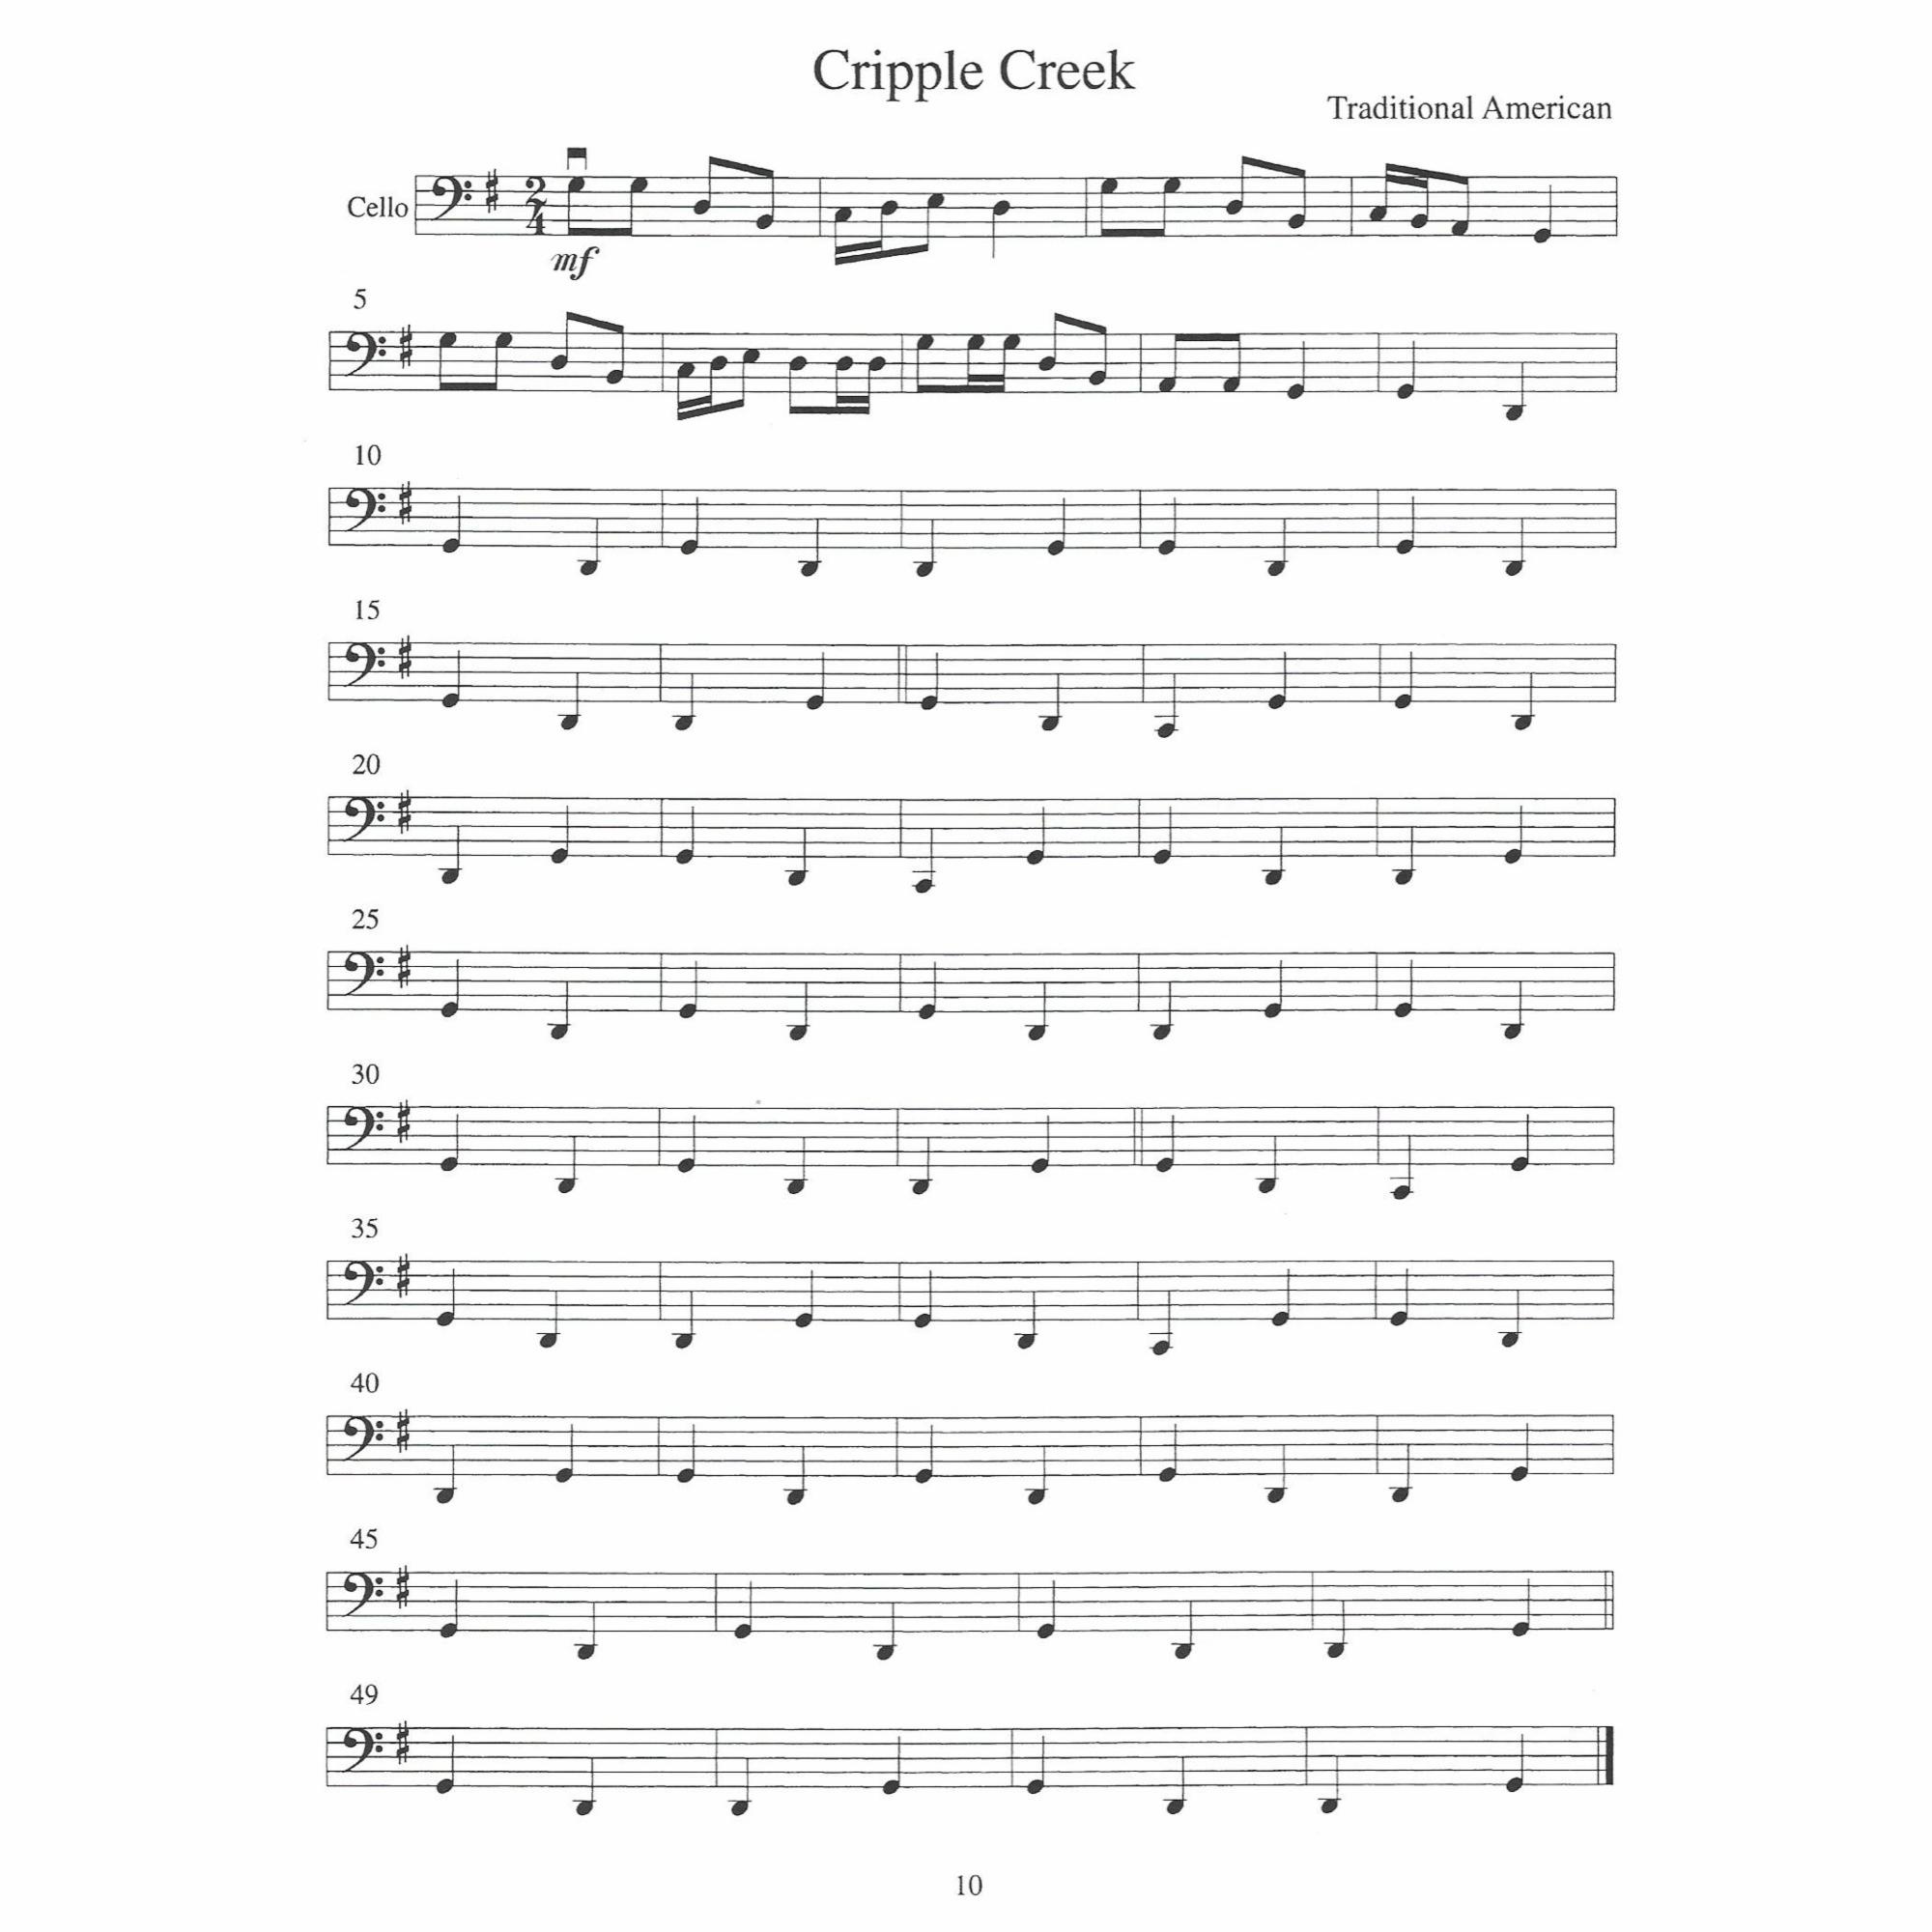 Sample: Cello (Pg. 10)